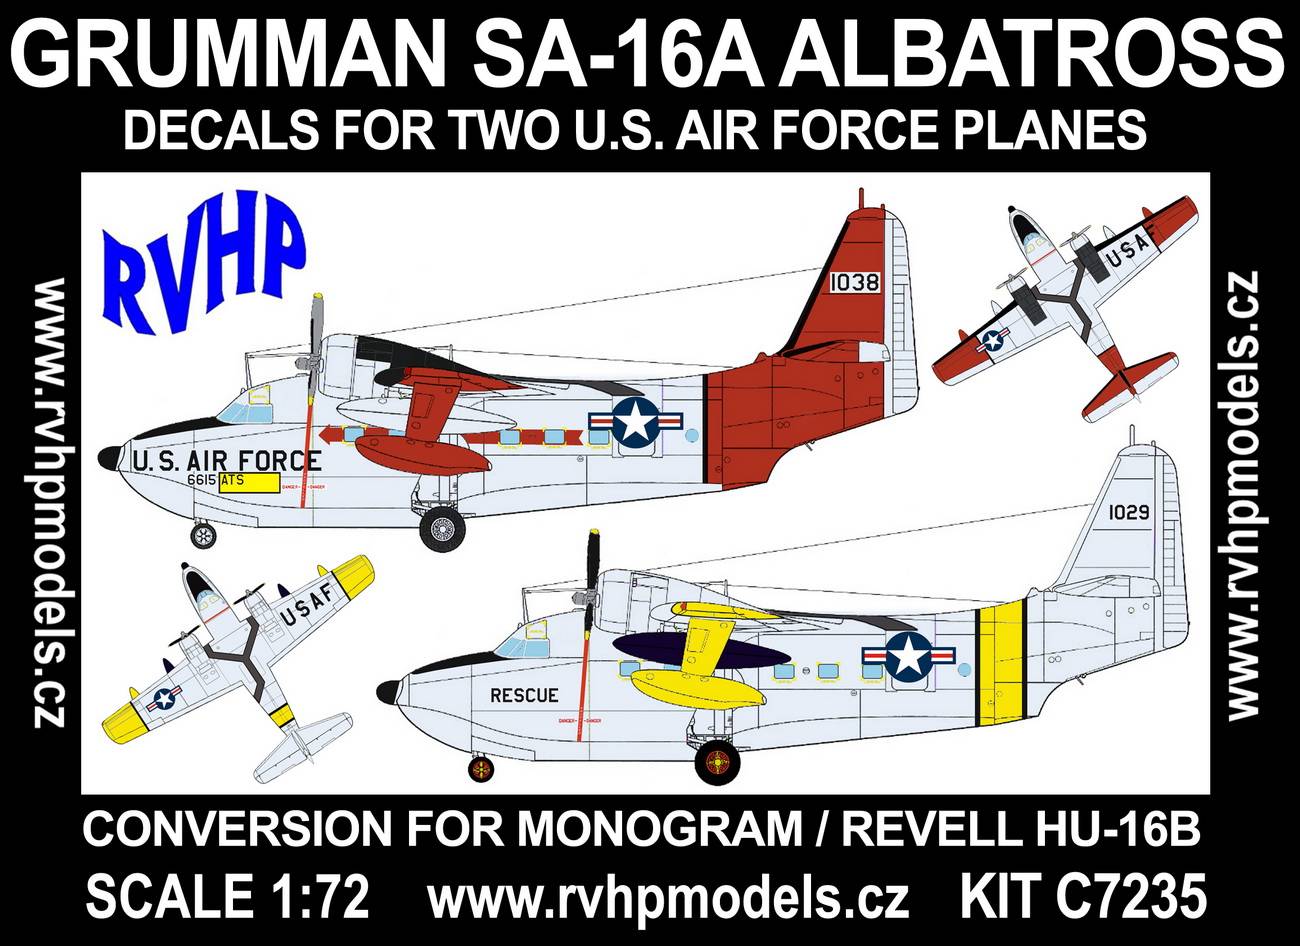 Accessoires - Grumman SA-16A Albatross (USAF) (conçu pour être utilisé